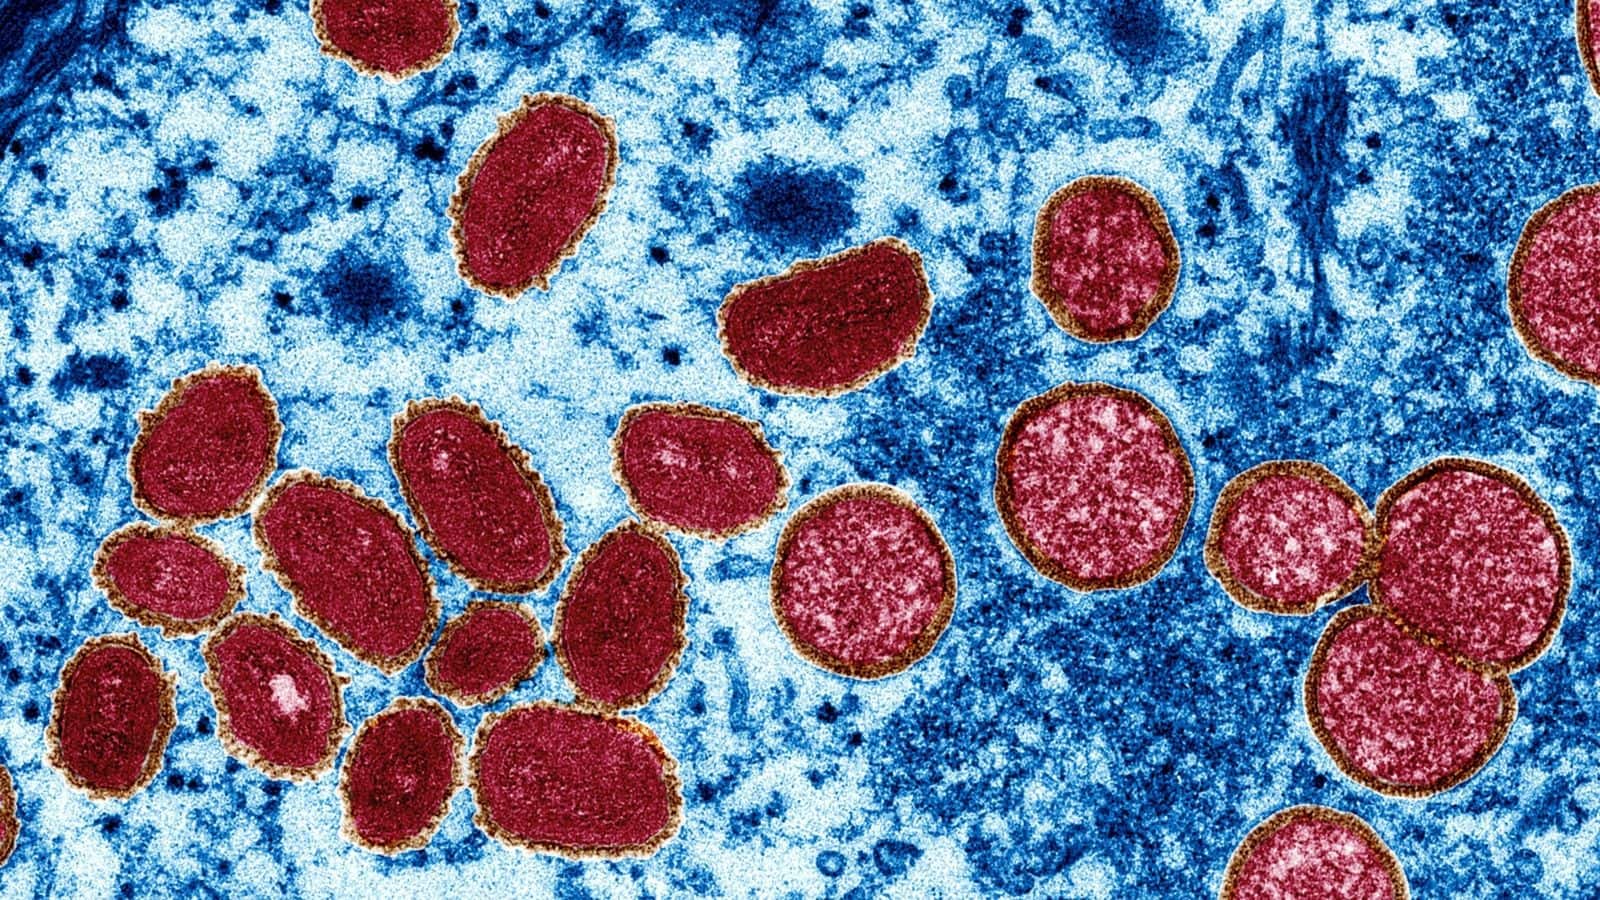 Prefeitura do rj confirma primeiro caso da varíola dos macacos